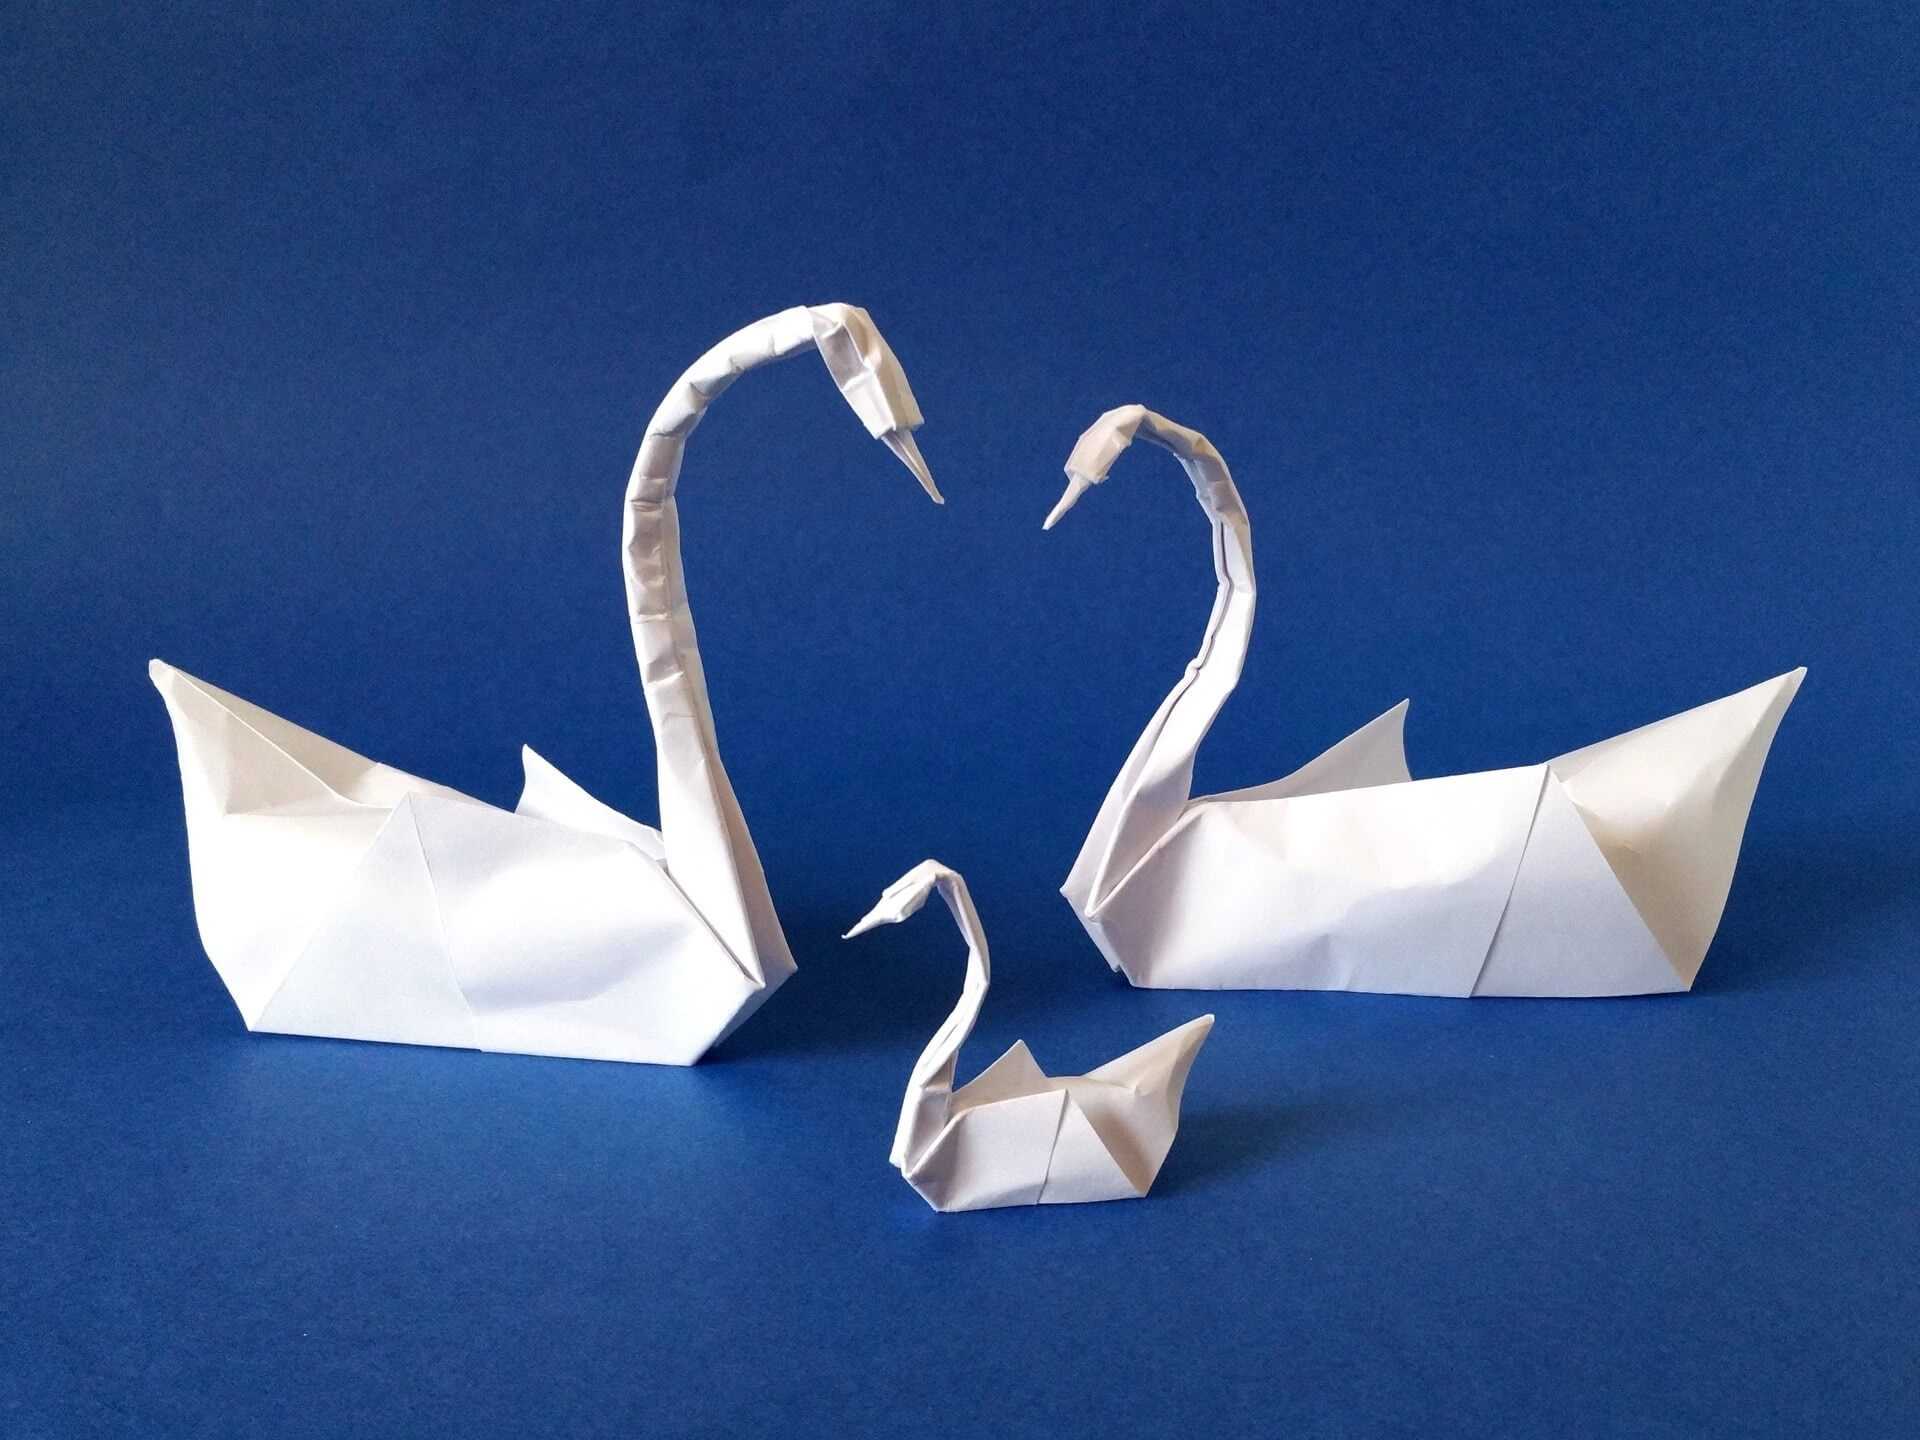 Двойной лебедь оригами своими руками